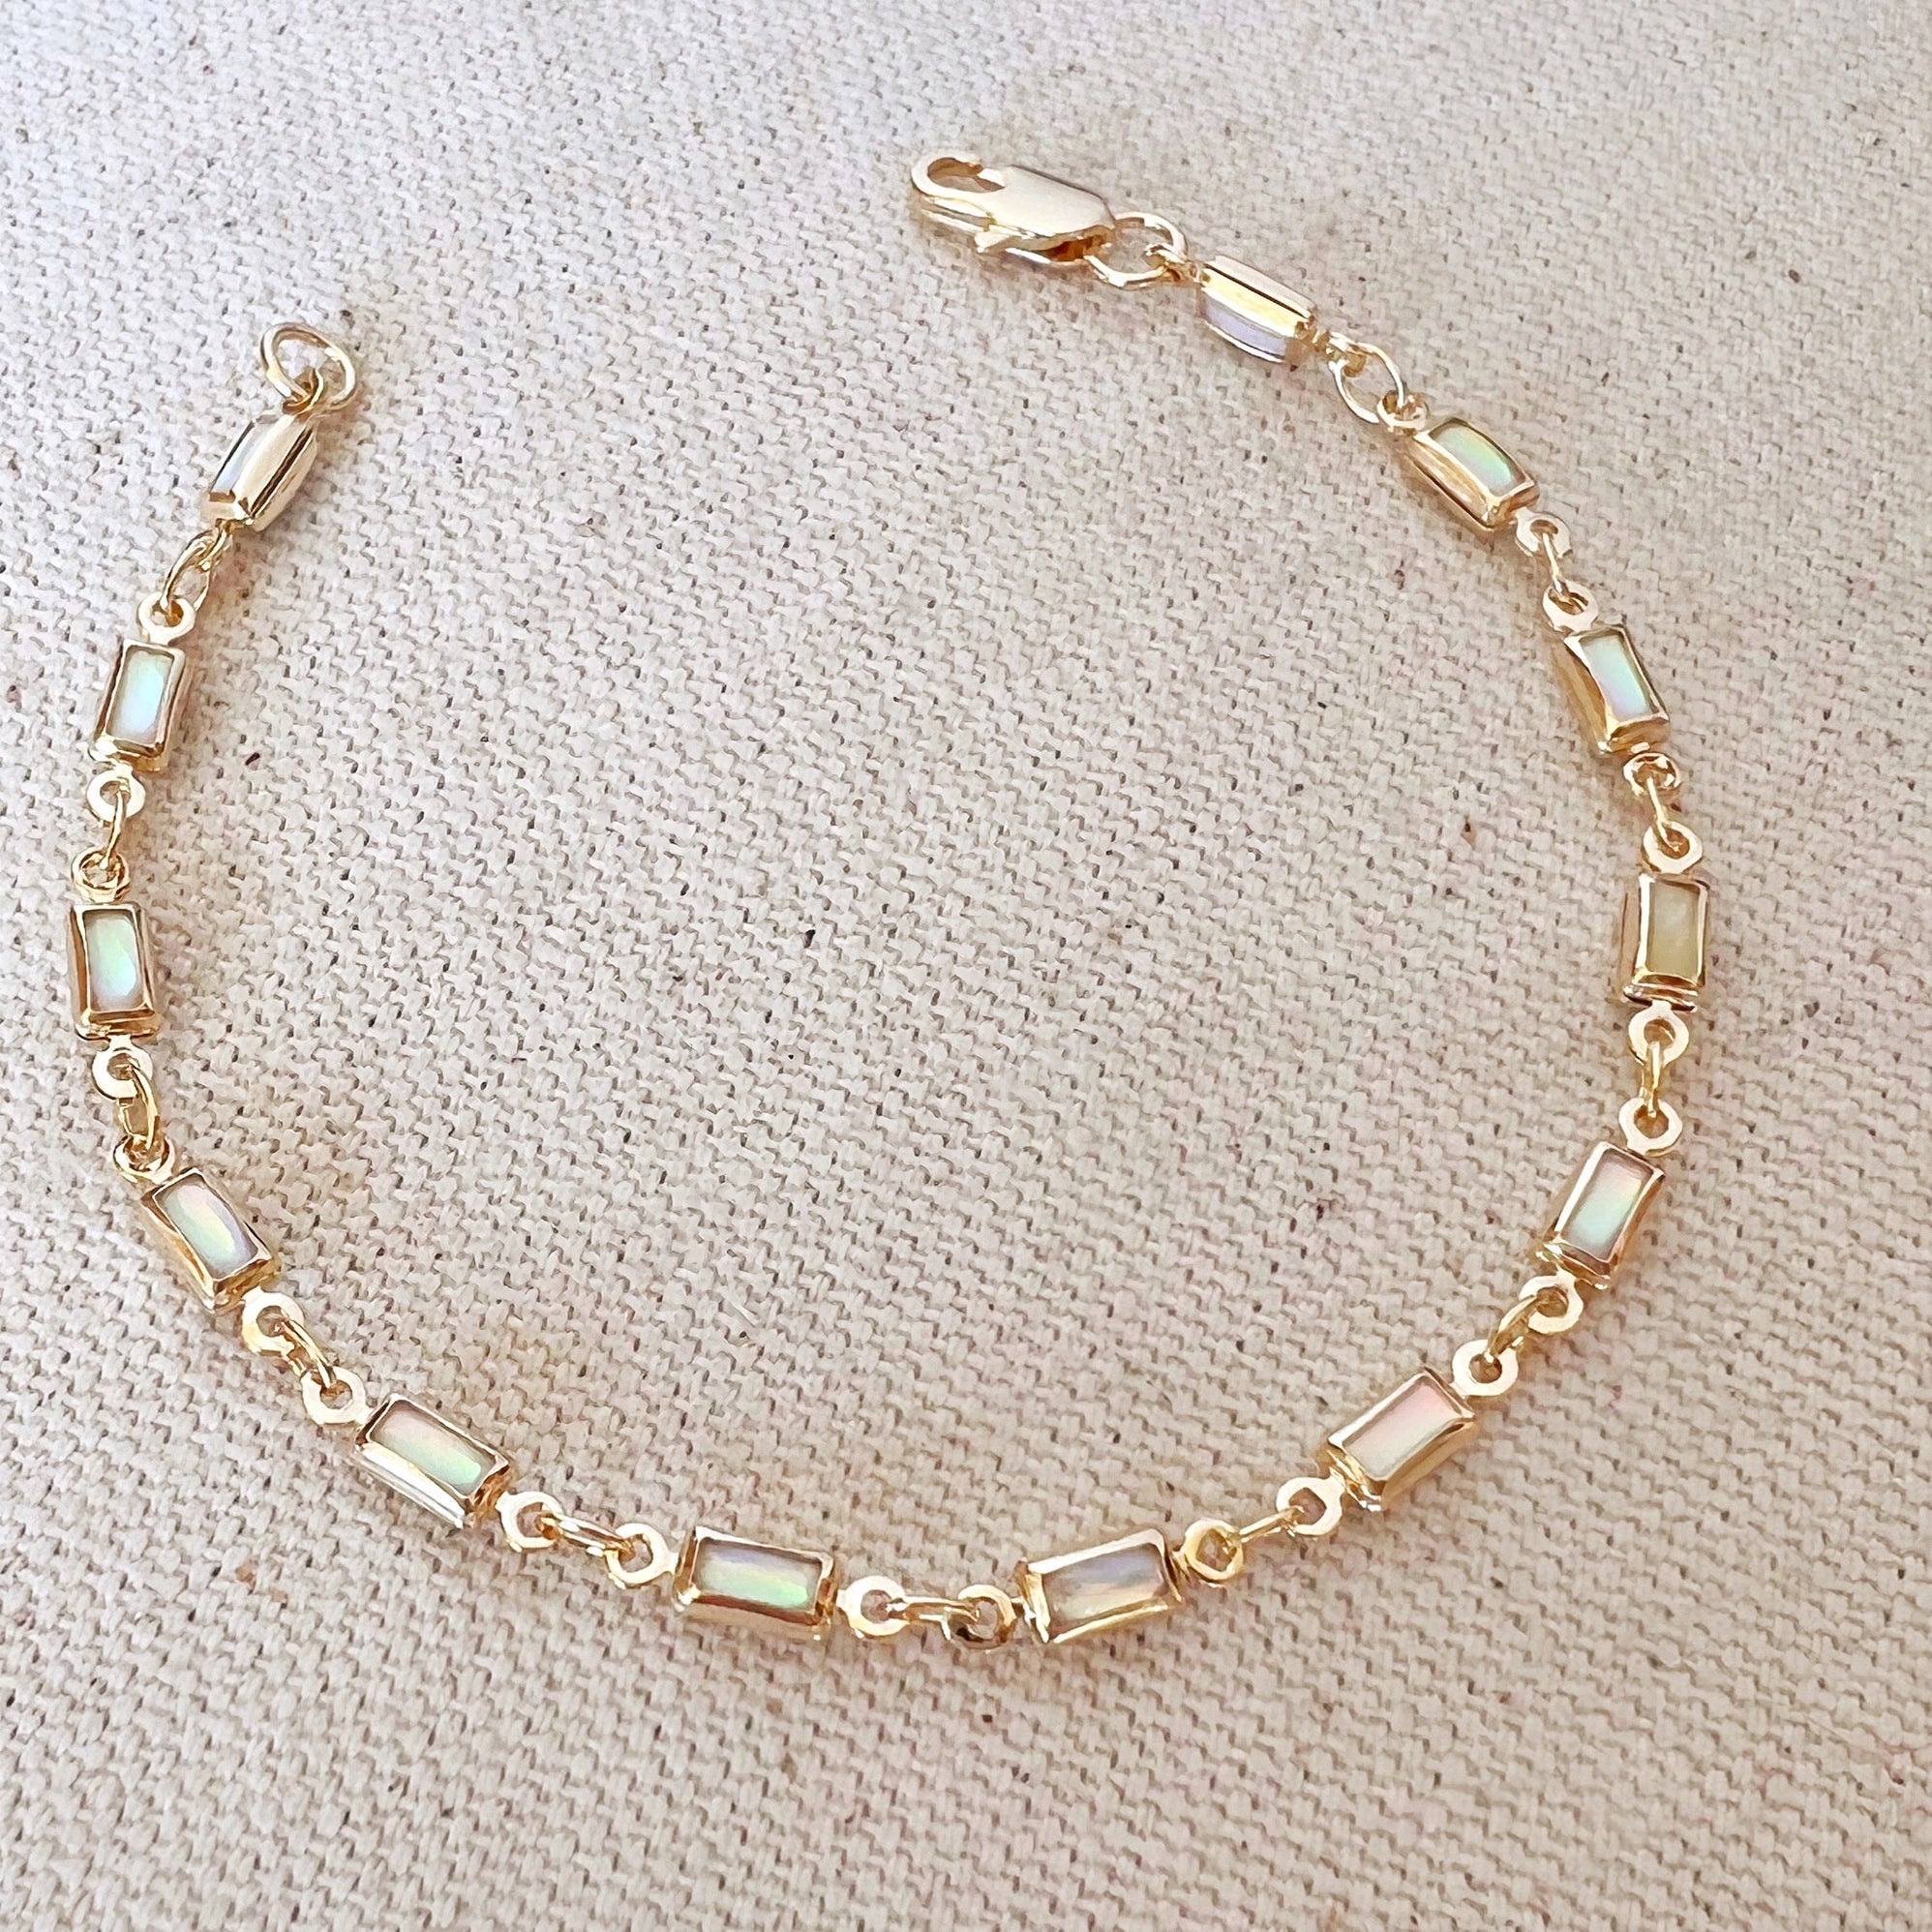 Opal Bracelet, 18k Gold Filled